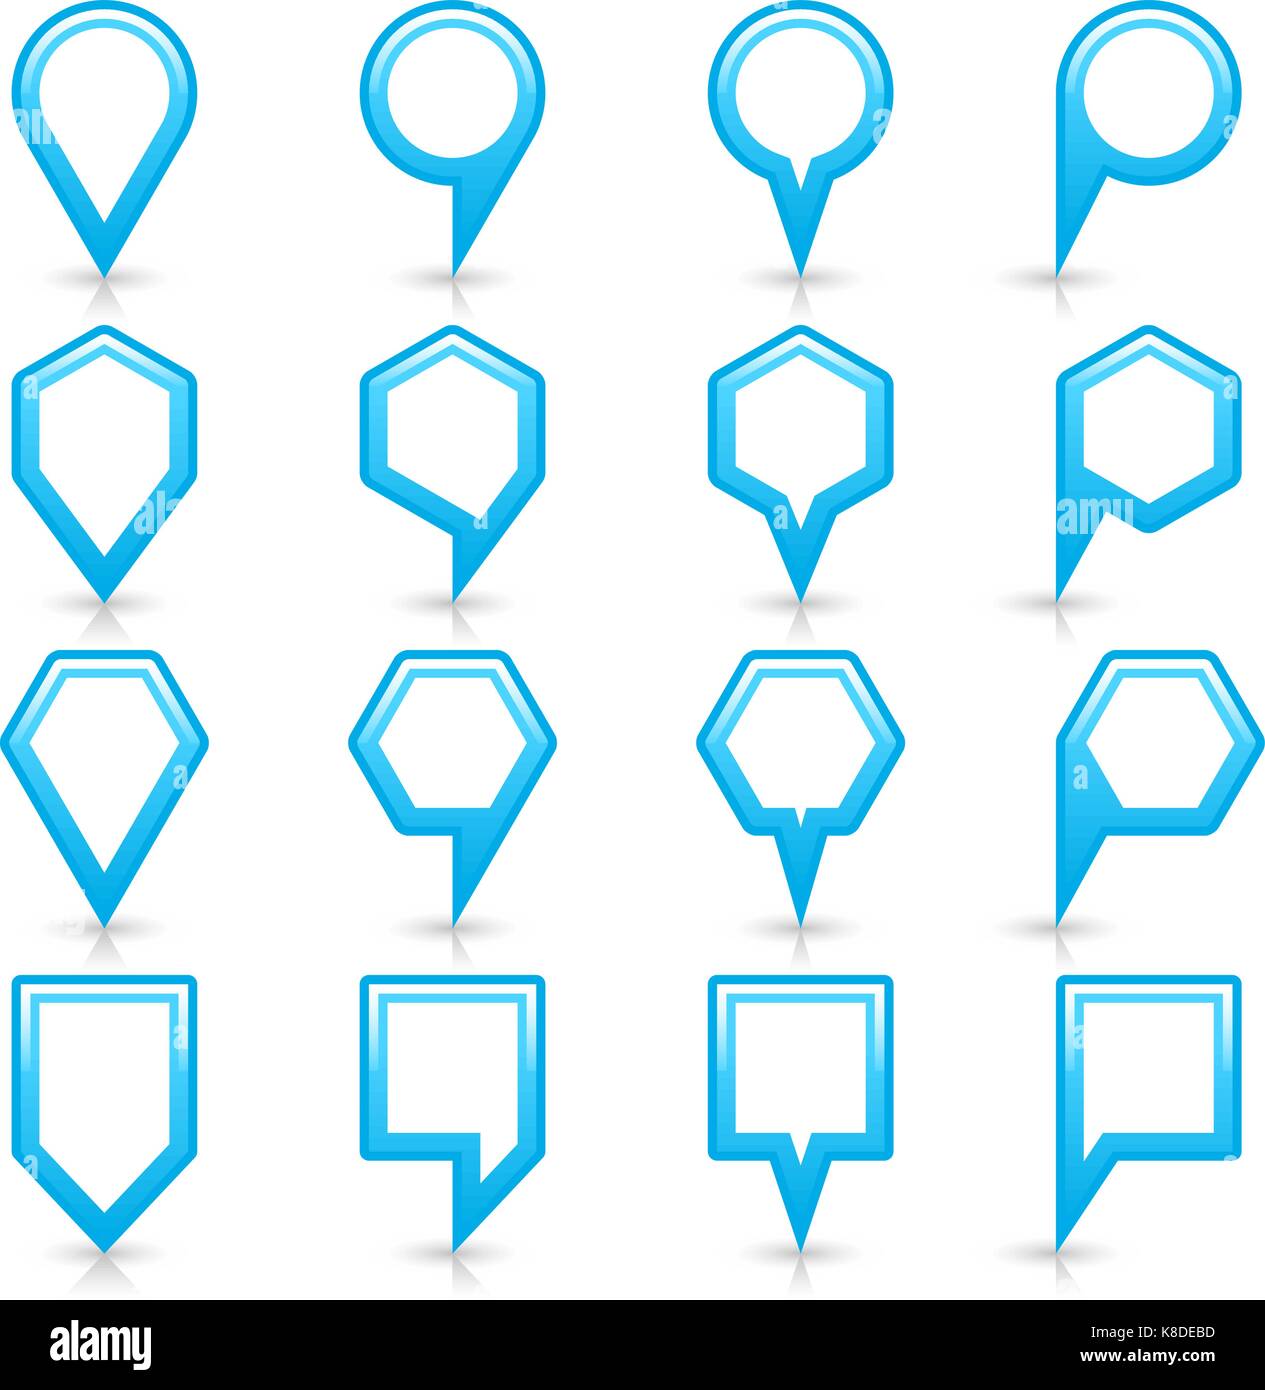 Piatto di colore blu mappa pin segno icona localizzazione con ombre di grigio e di riflessione isolati su sfondo bianco. web design salva elemento nel vettore illustratio Illustrazione Vettoriale